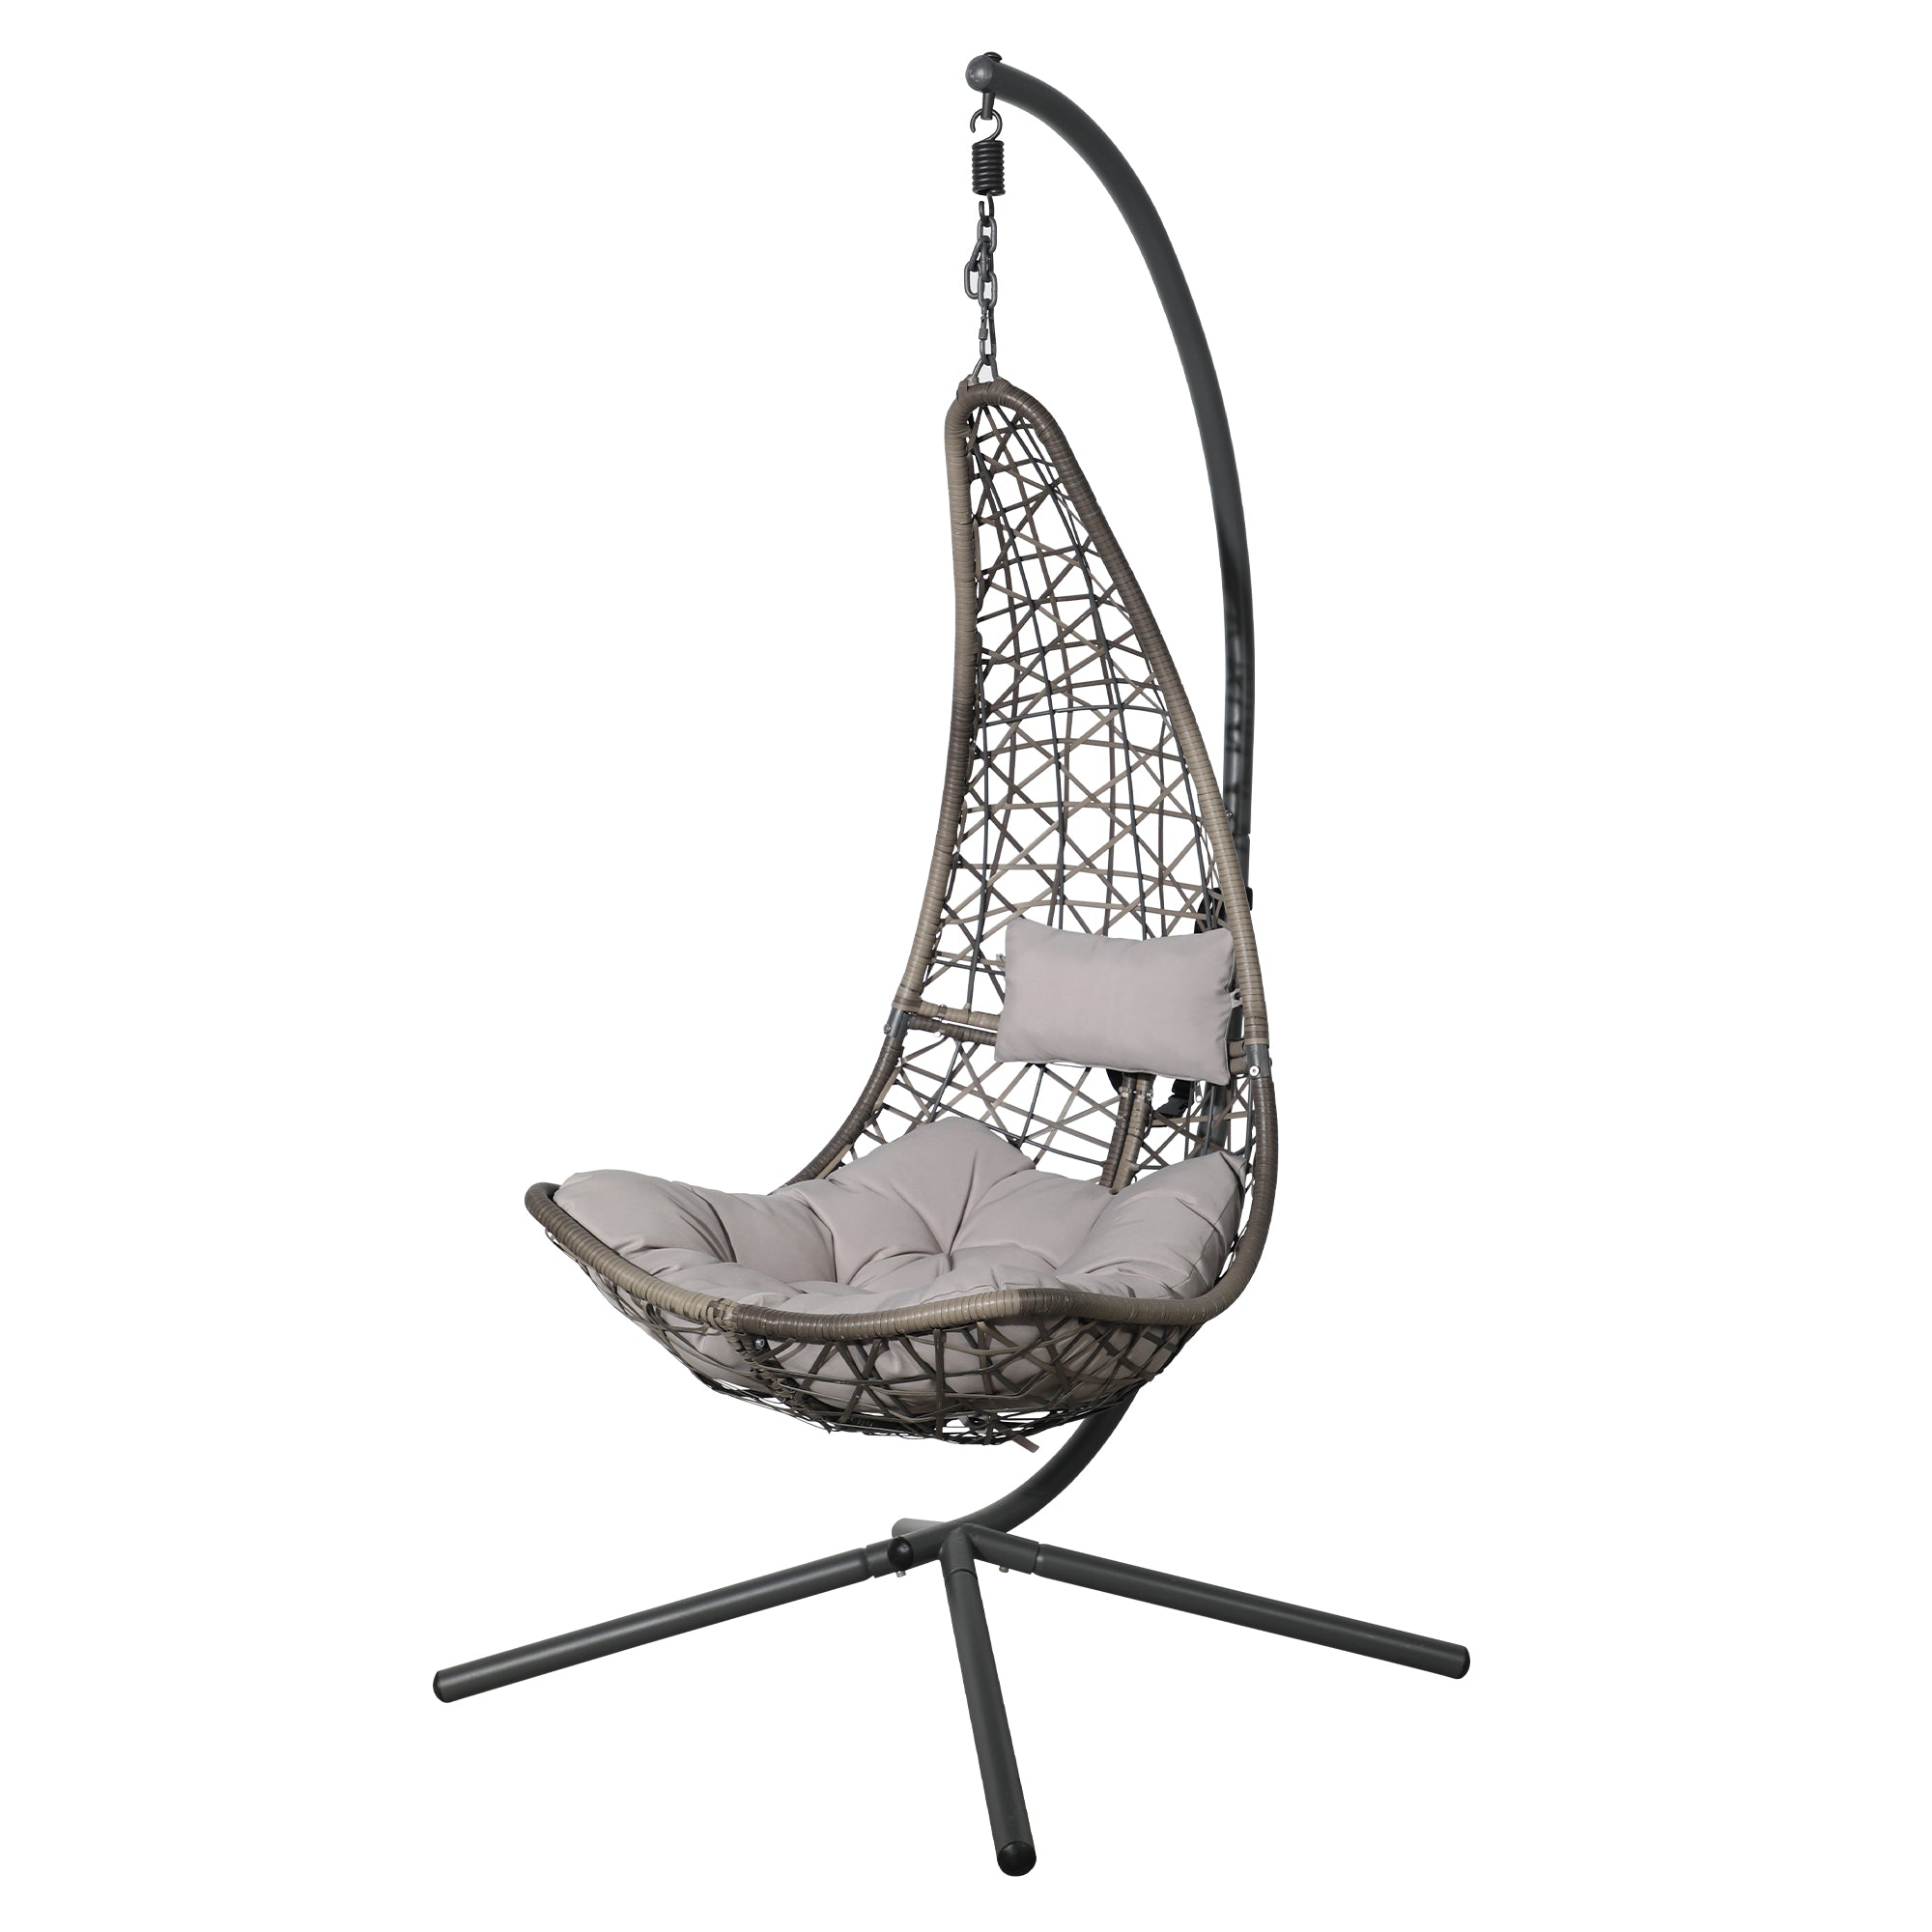 Leura Swing Moon Chair Outdoor Indoor Wicker Hammock, Grey Wicker